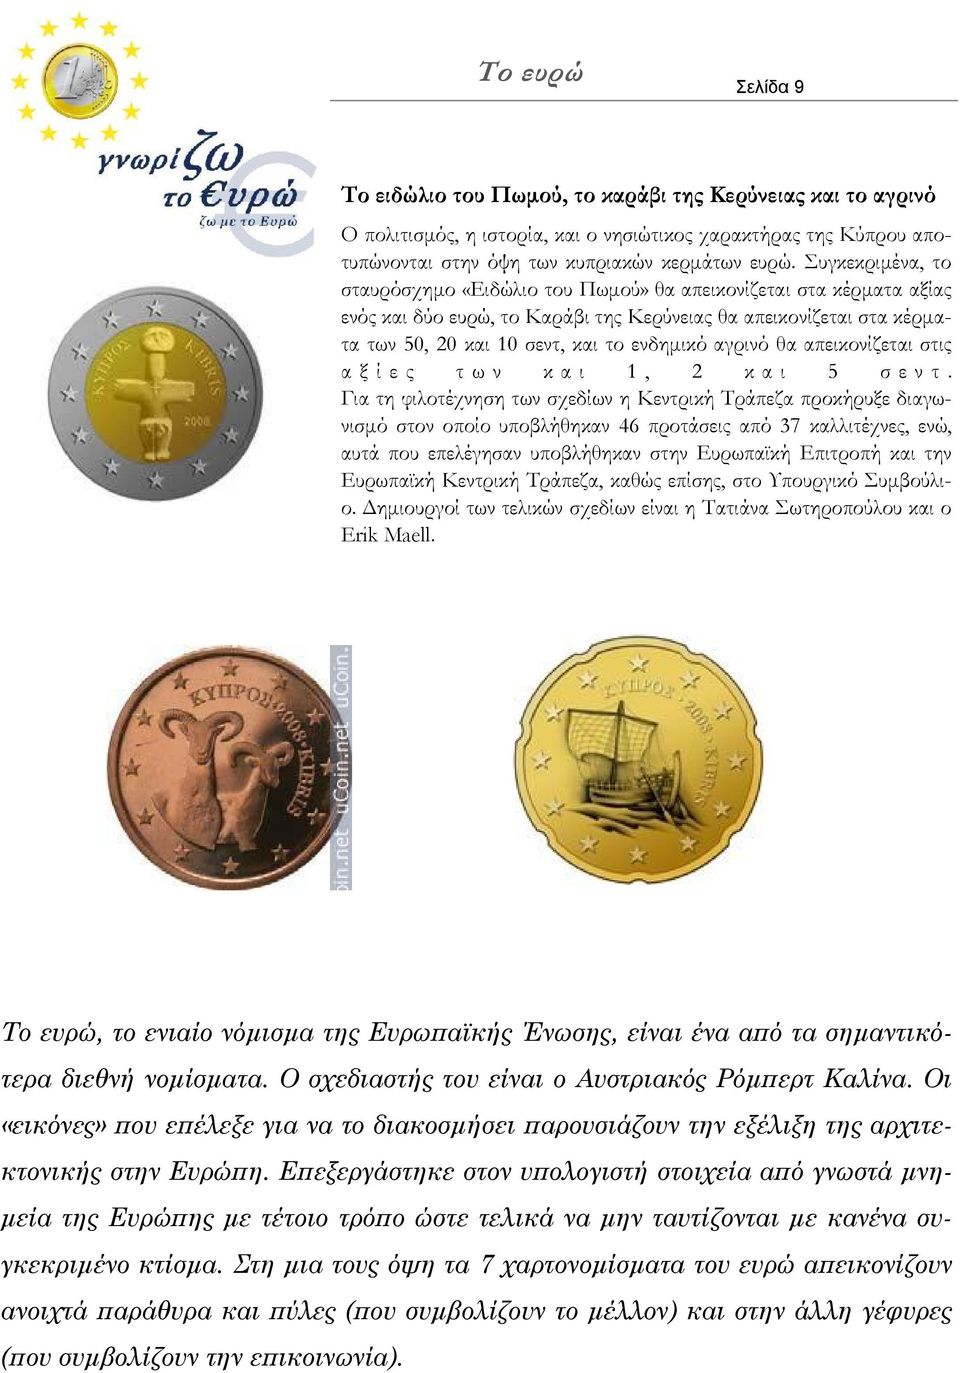 Συγκεκριμένα, το σταυρόσχημο «Ειδώλιο του Πωμού» θα απεικονίζεται στα κέρματα αξίας ενός και δύο ευρώ, το Καράβι της Κερύνειας θα απεικονίζεται στα κέρματα των 50, 20 και 10 σεντ, και το ενδημικό